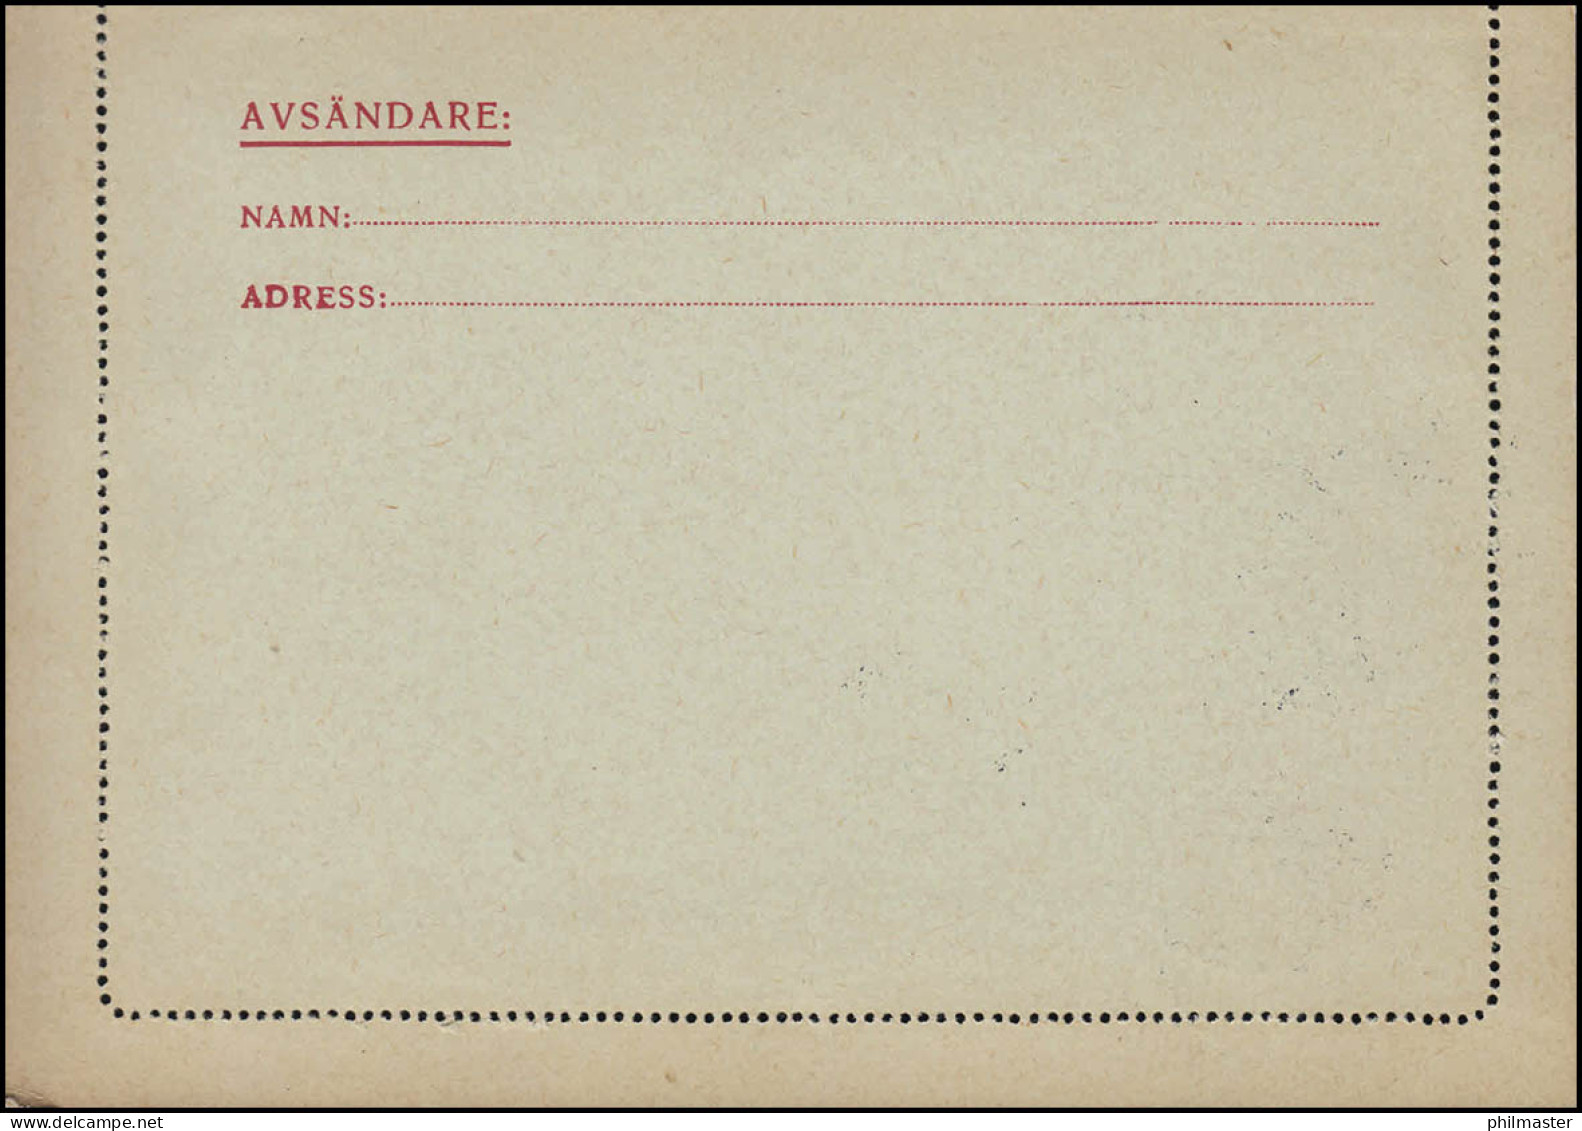 Kartenbrief K 27IW KORTBREV 15 Öre, HÖÖR 24.4.1931 Nach Göteborg - Interi Postali